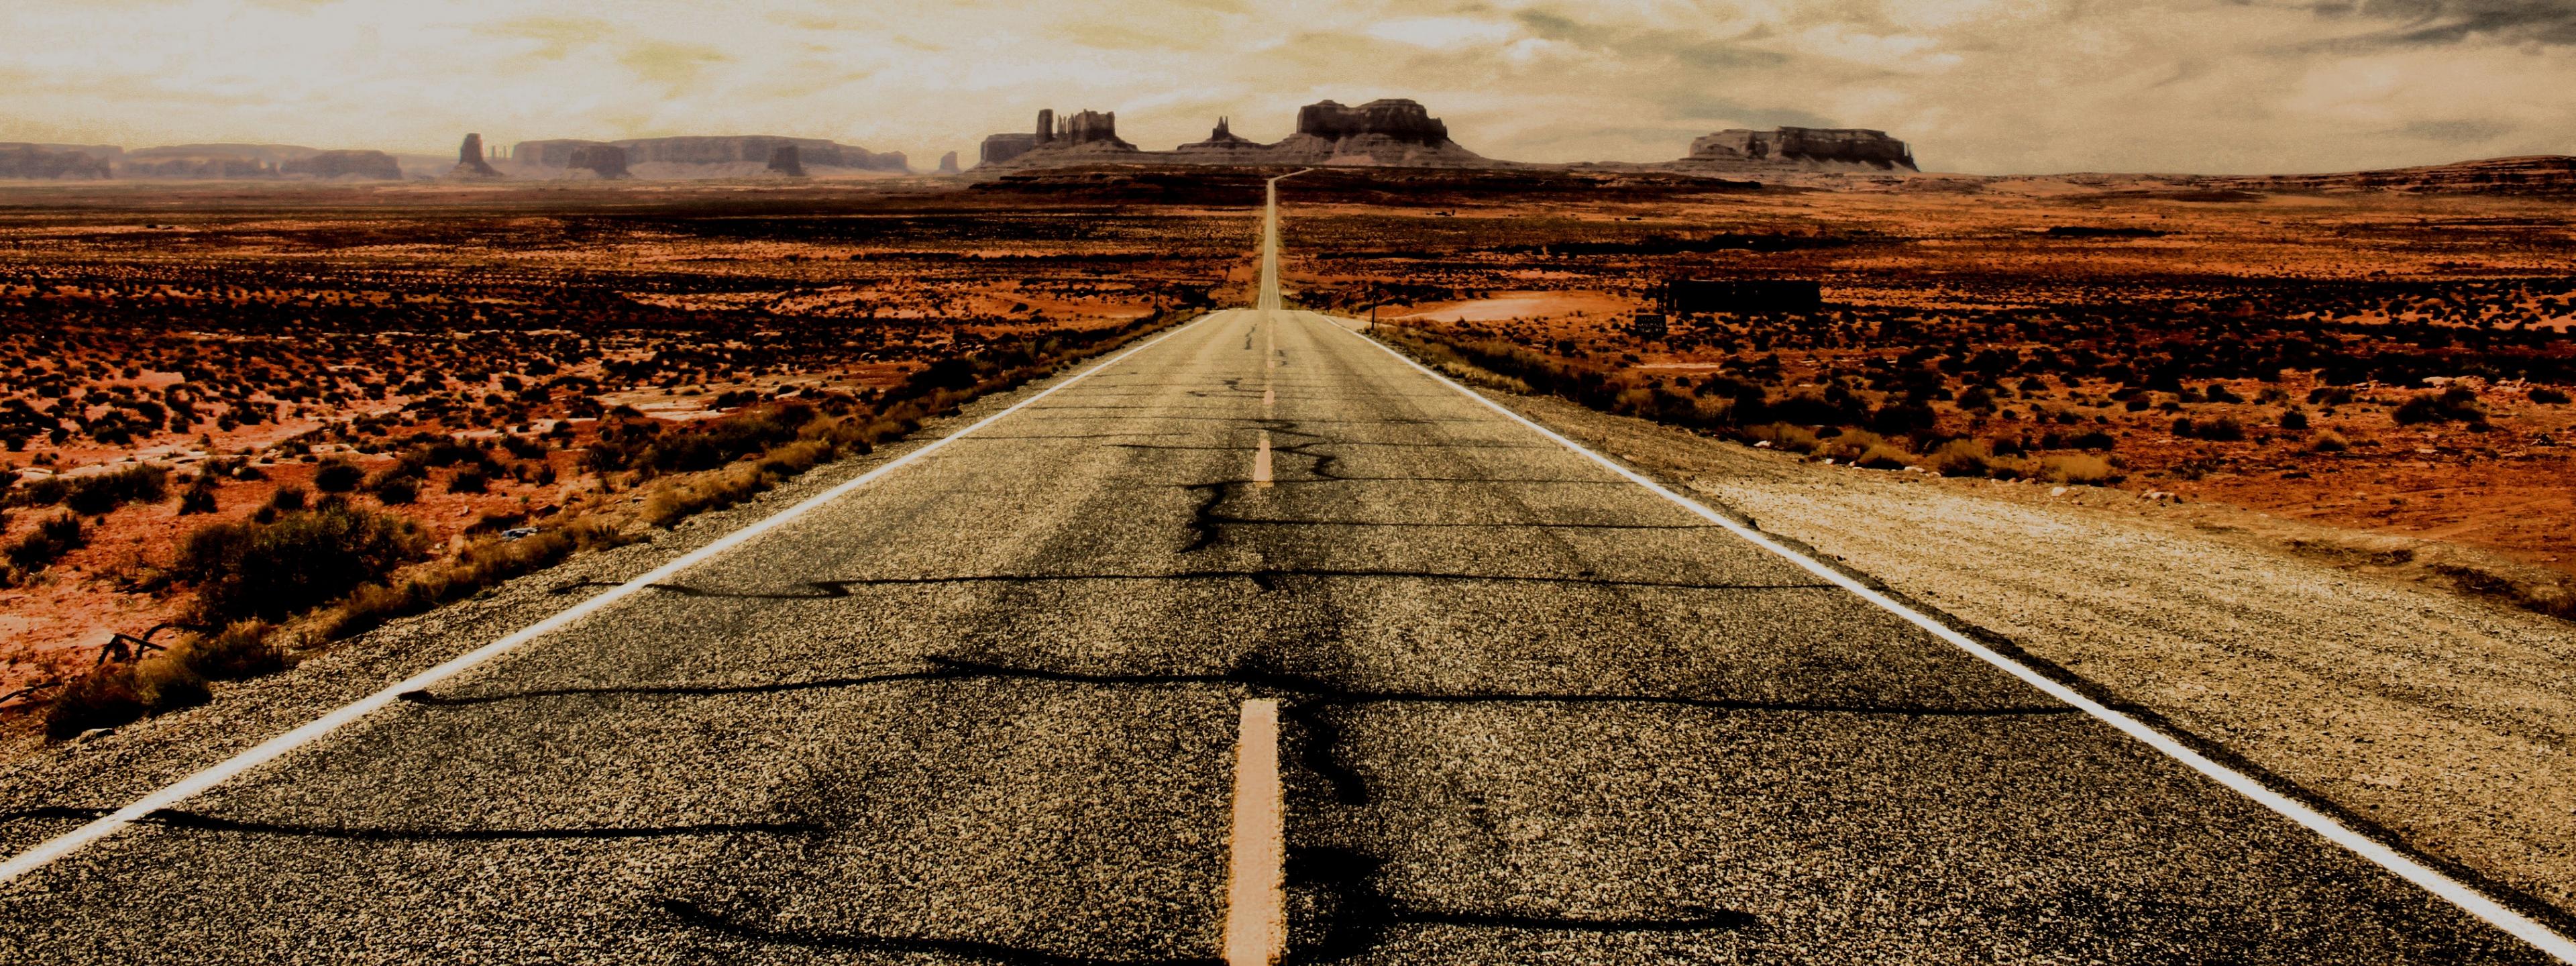 Eine Straße in der Wüste, die zu einer weit entfernten Felsformation führt.